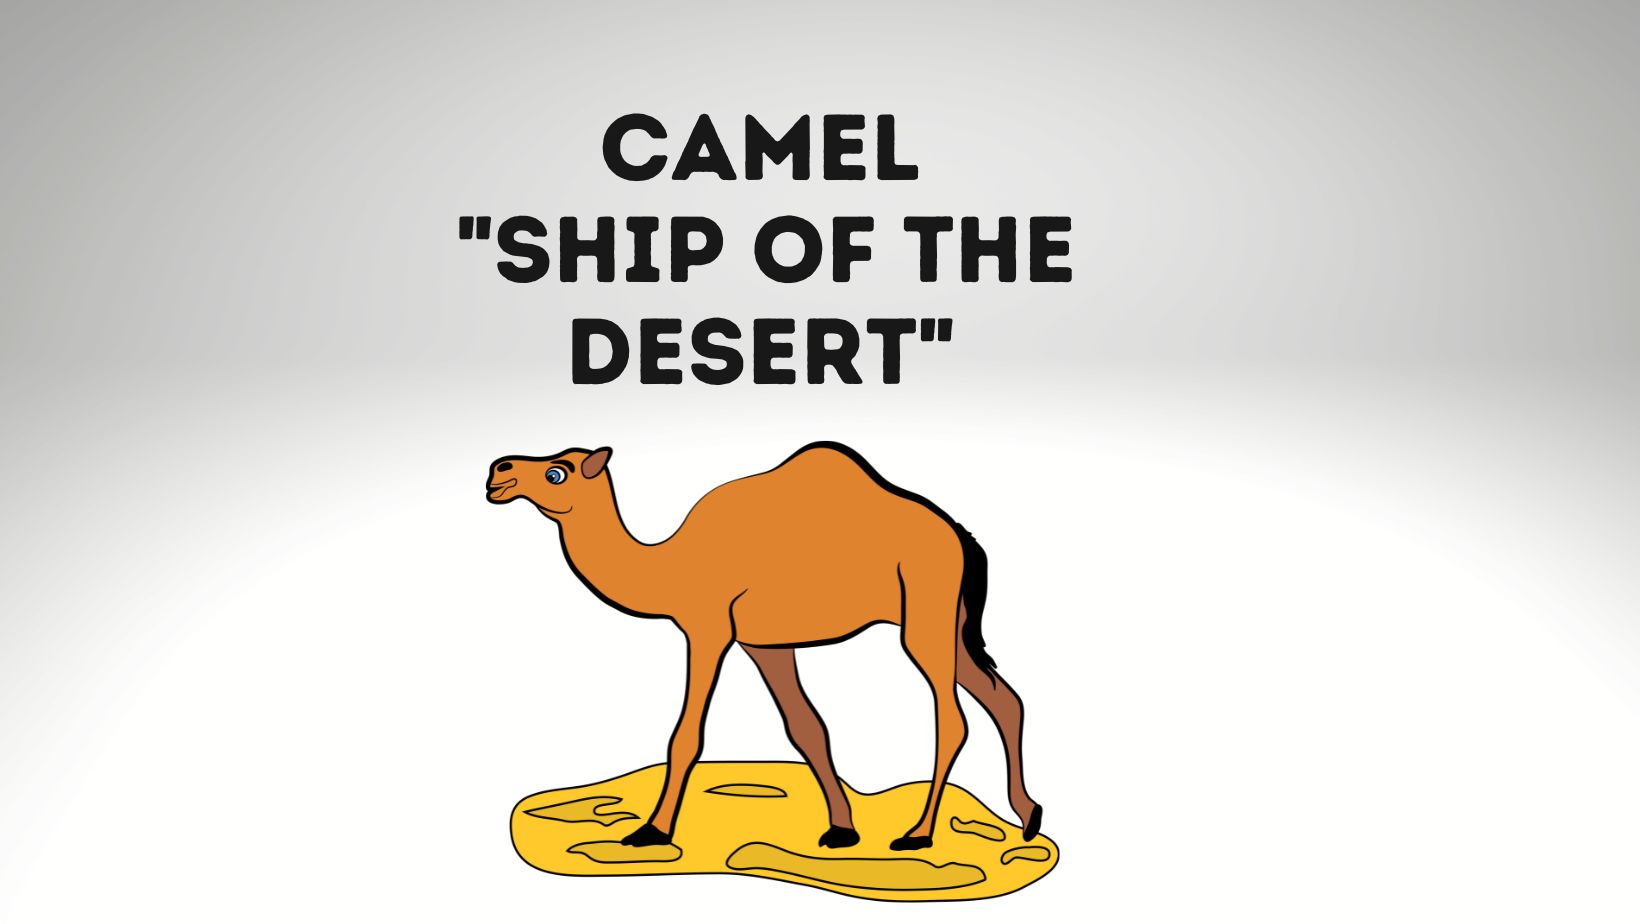 Camel, the Ship of the Desert